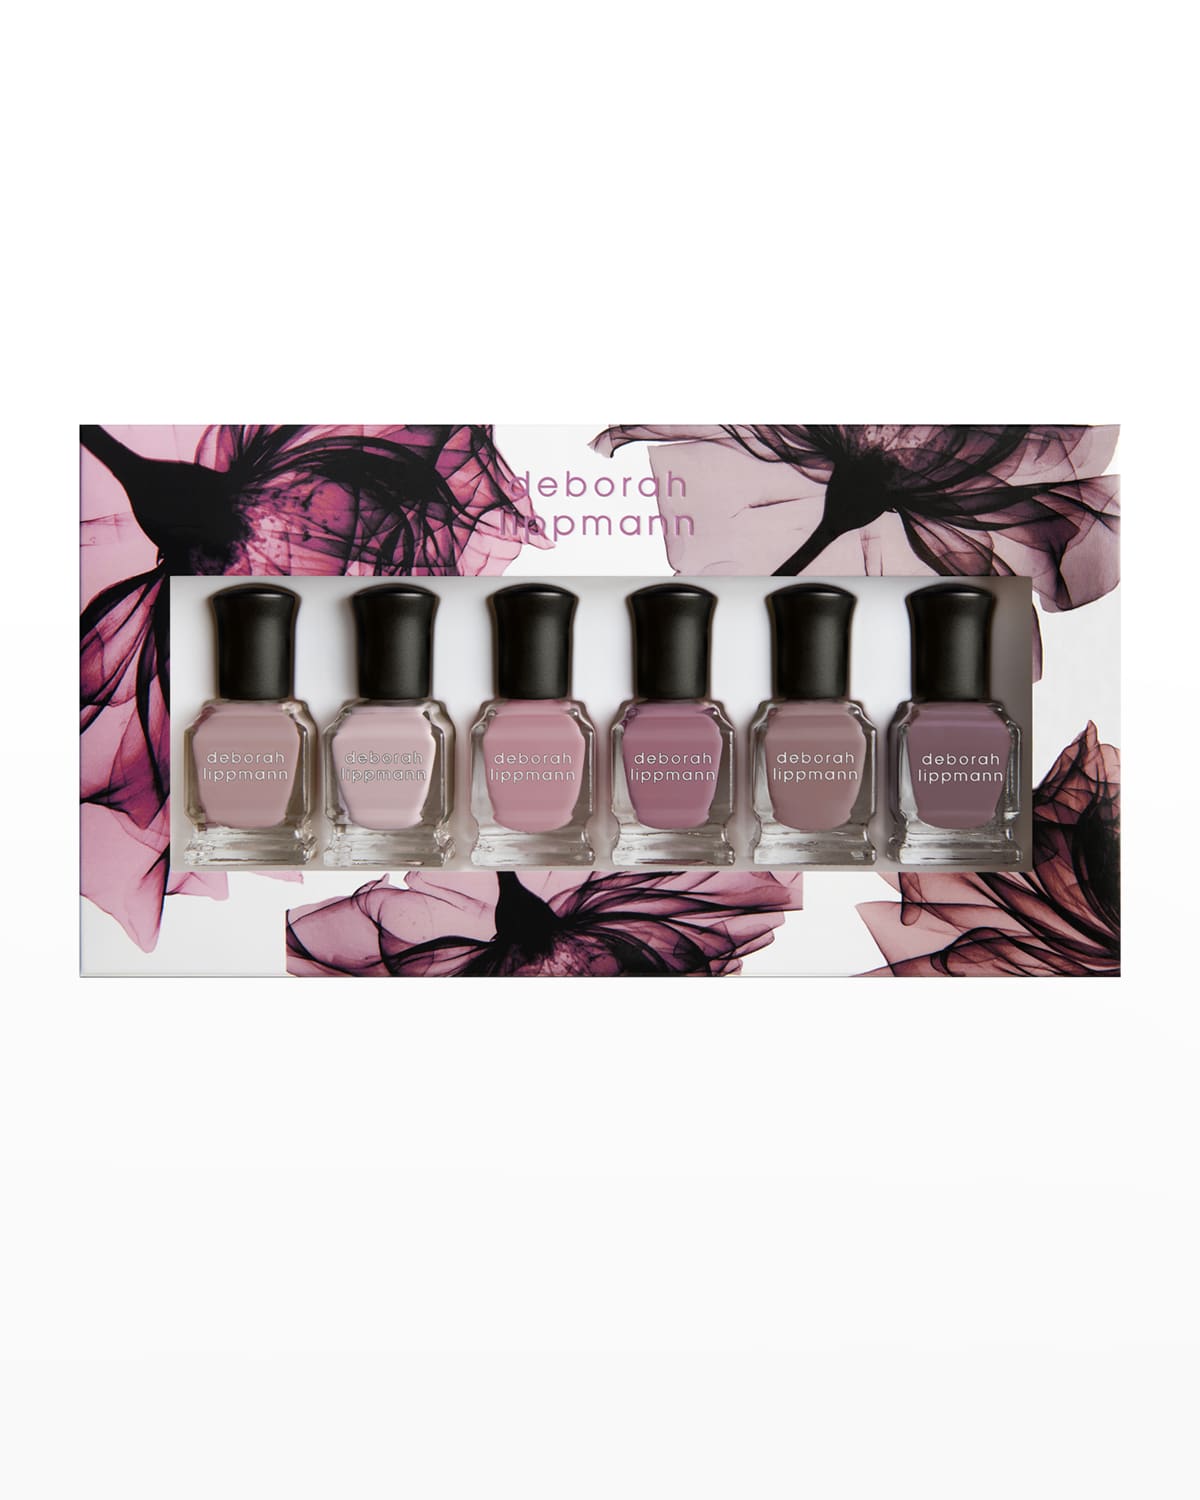 Deborah Lippmann Bed of Roses Gel Lab Pro Color Nail Polishes, Set of 6